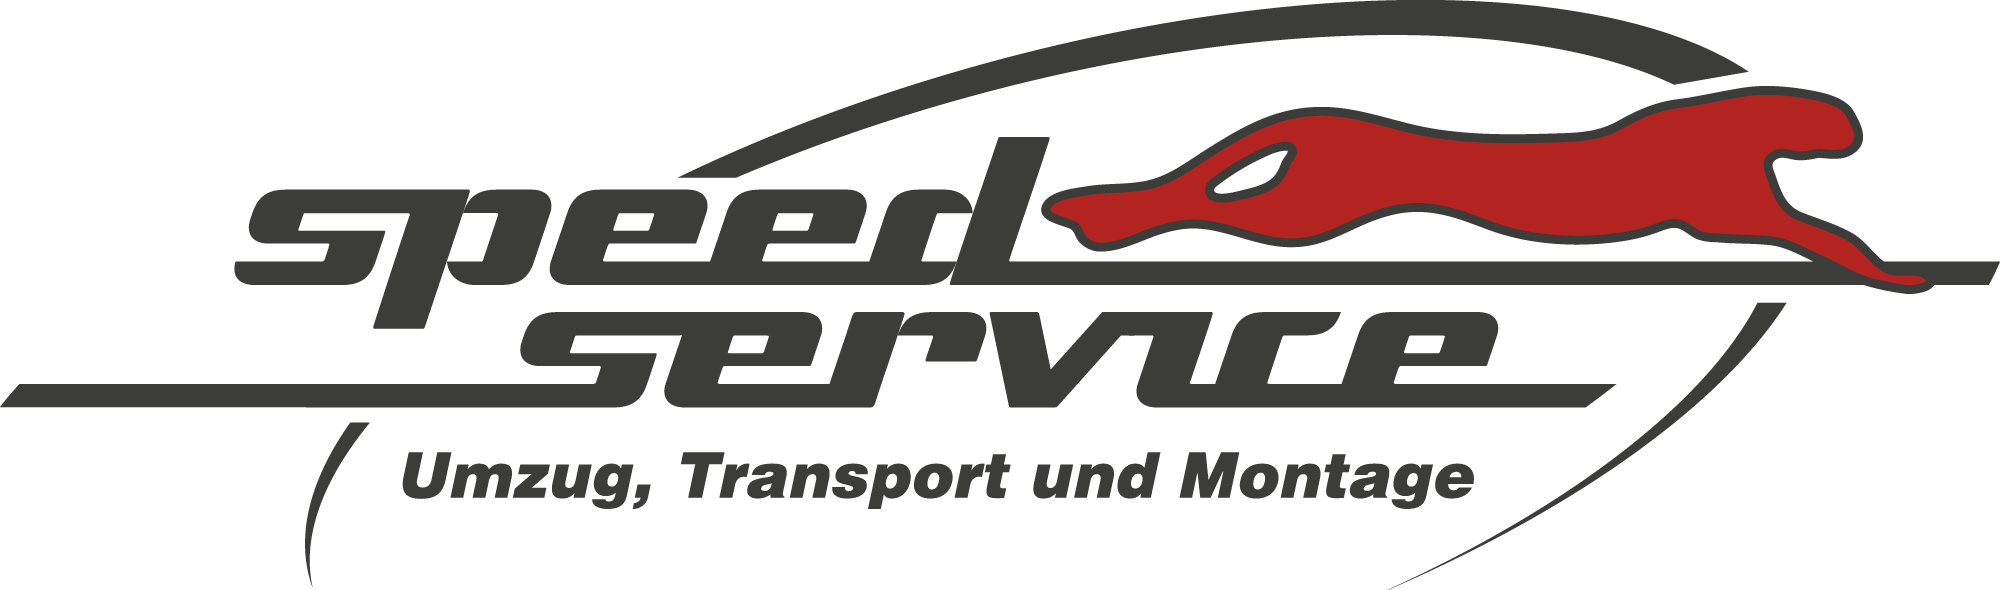 speedservice-logo